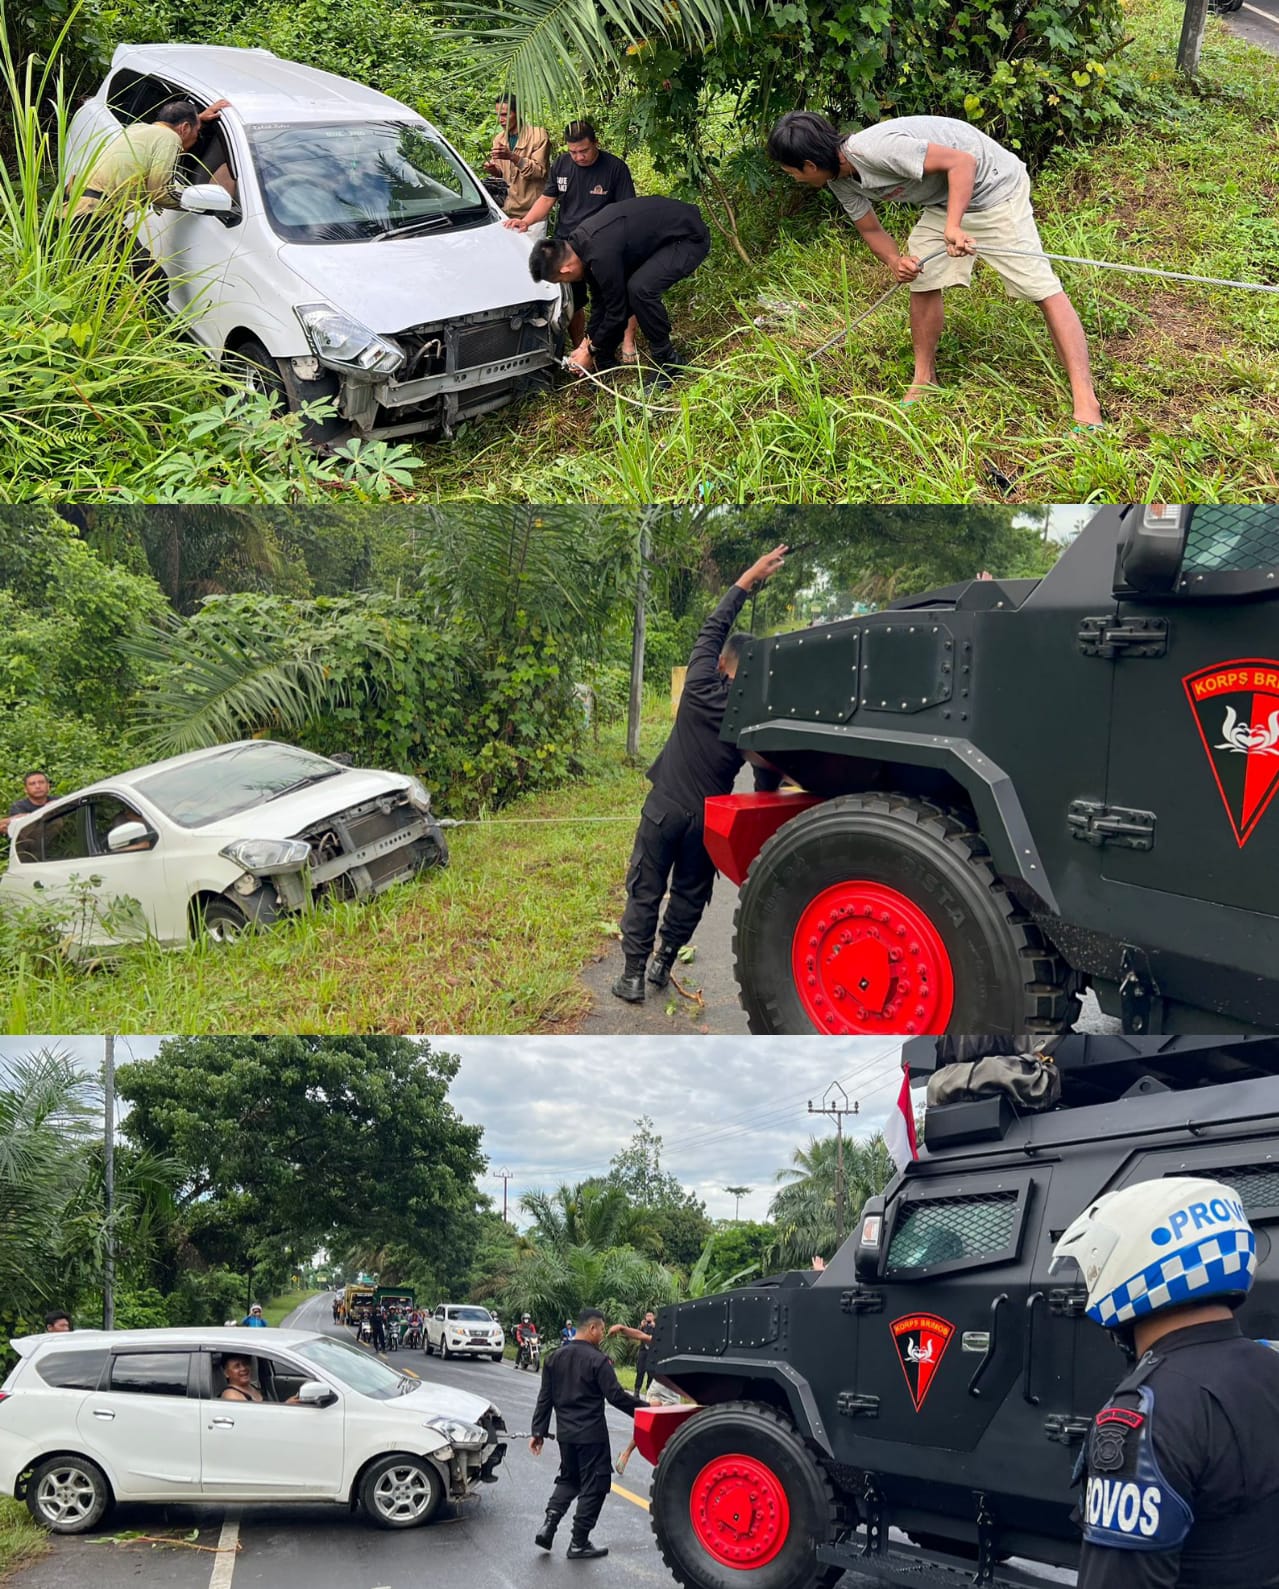 Super Keren Personel Satuan Brimob Polda Sumsel Batalyon B Pelopor Bantu Evakuasi Mobil Masuk Jurang